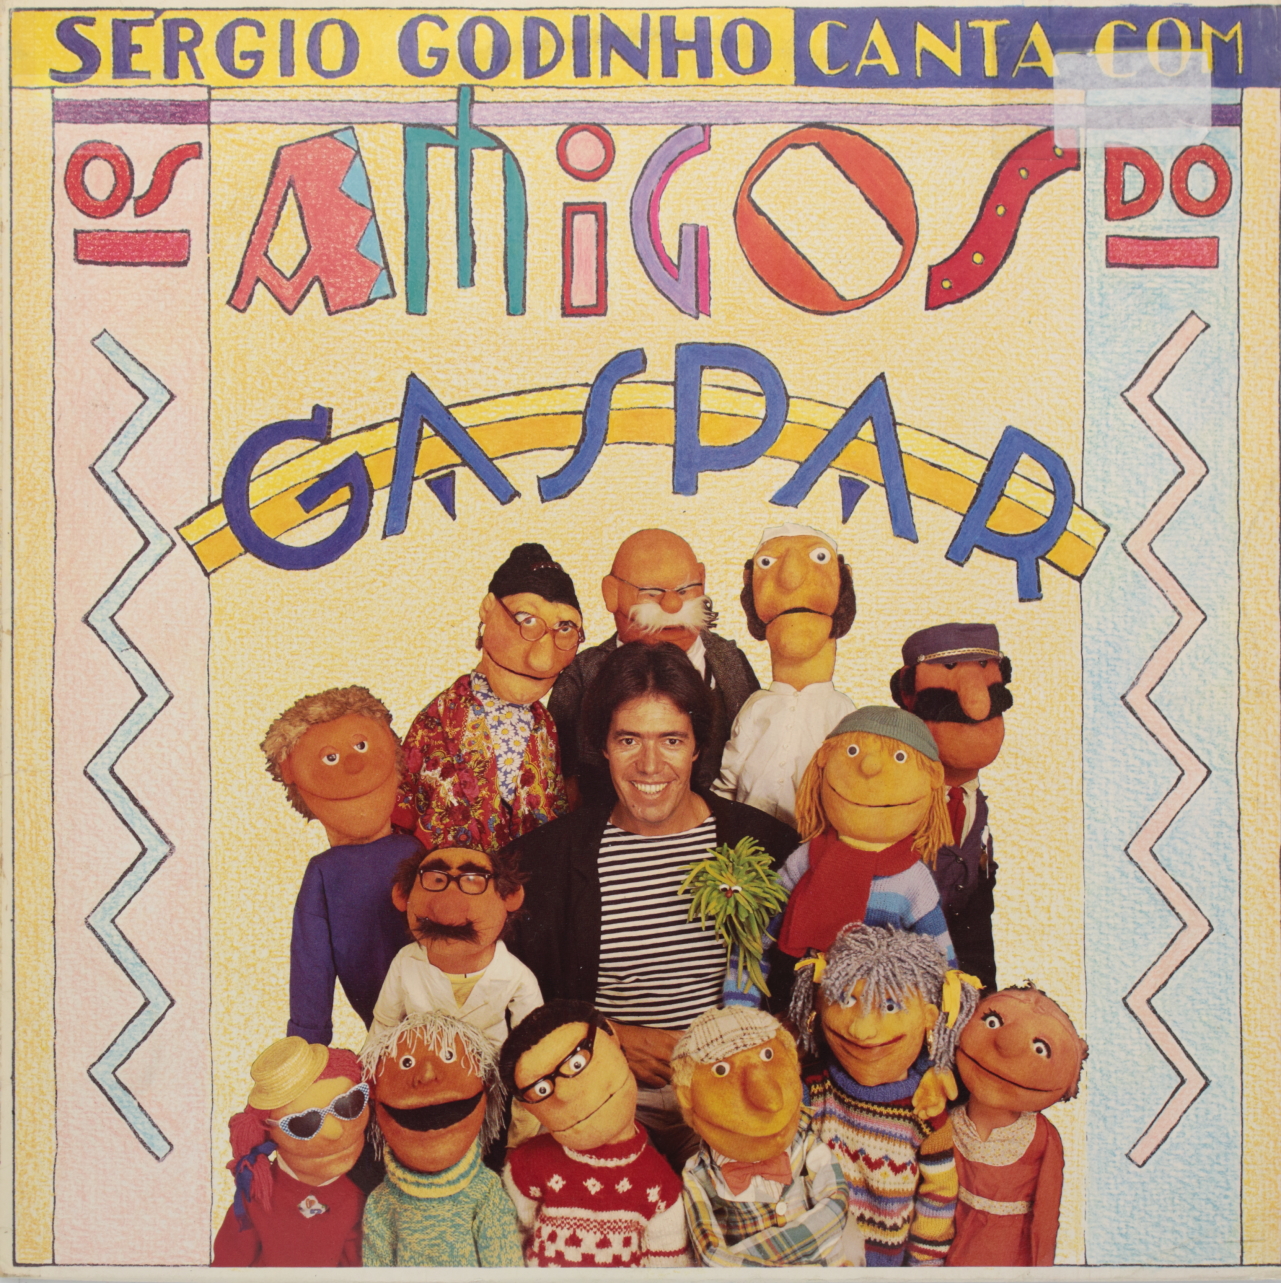 Sérgio Godinho canta com os amigos do Gaspar